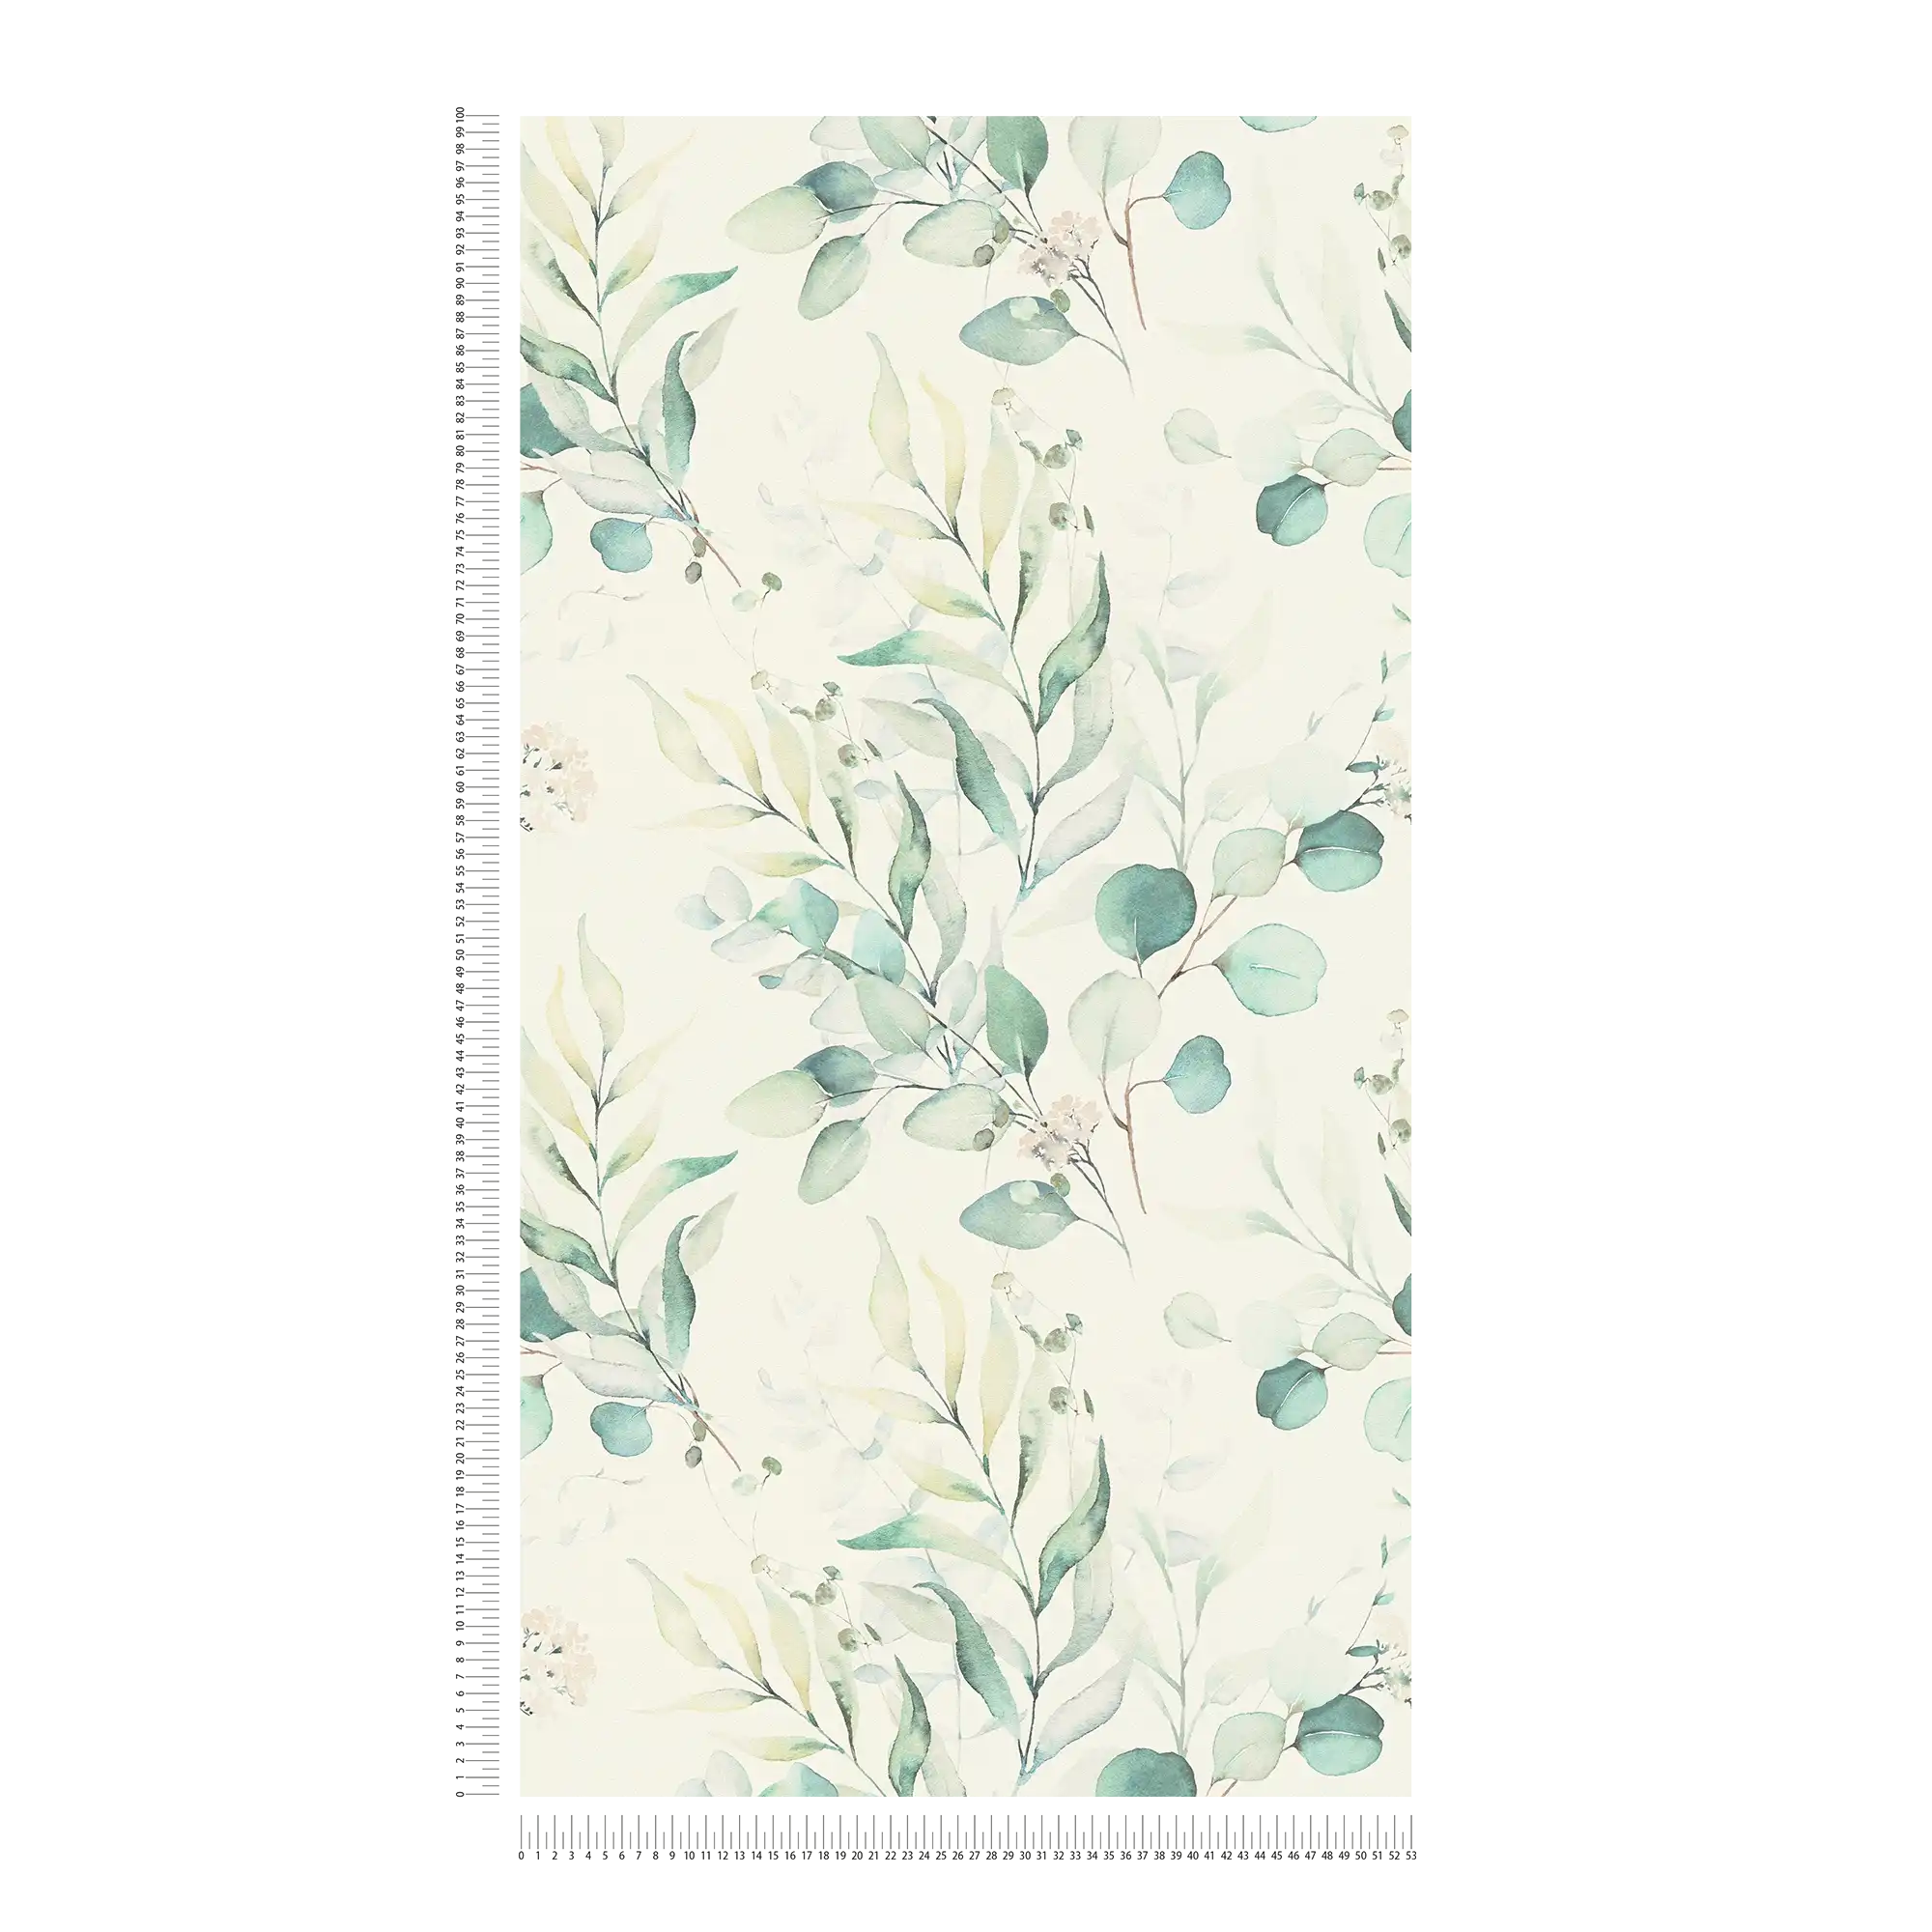             Vliestapete mit Aquarell Blättermuster im Wassermal-Stil – Creme, Grün
        